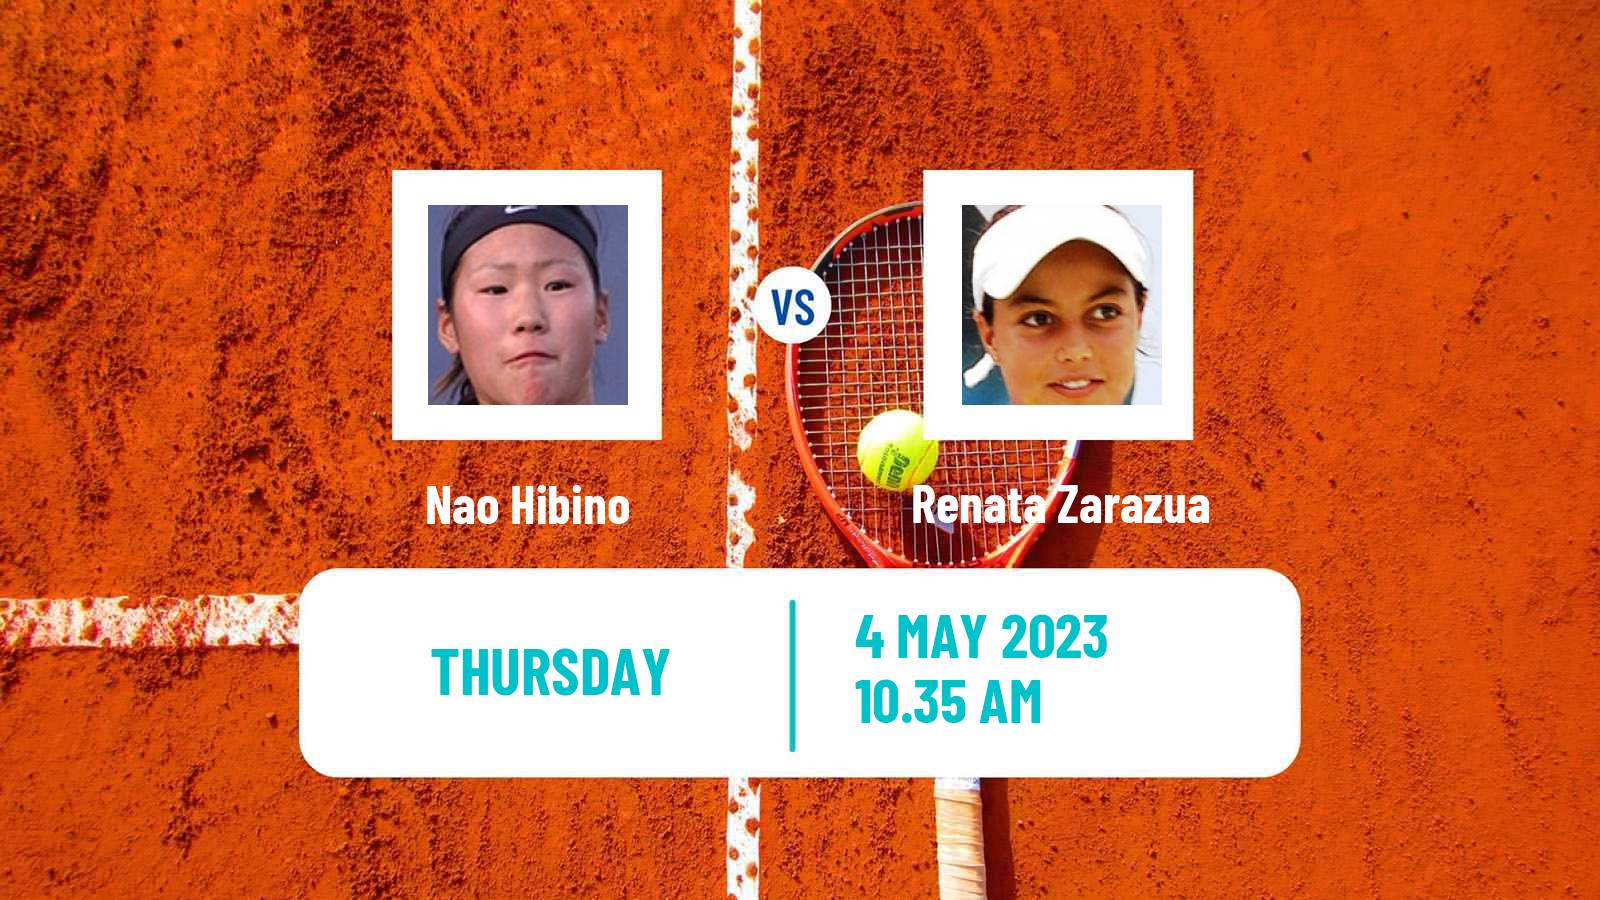 Tennis ITF Tournaments Nao Hibino - Renata Zarazua